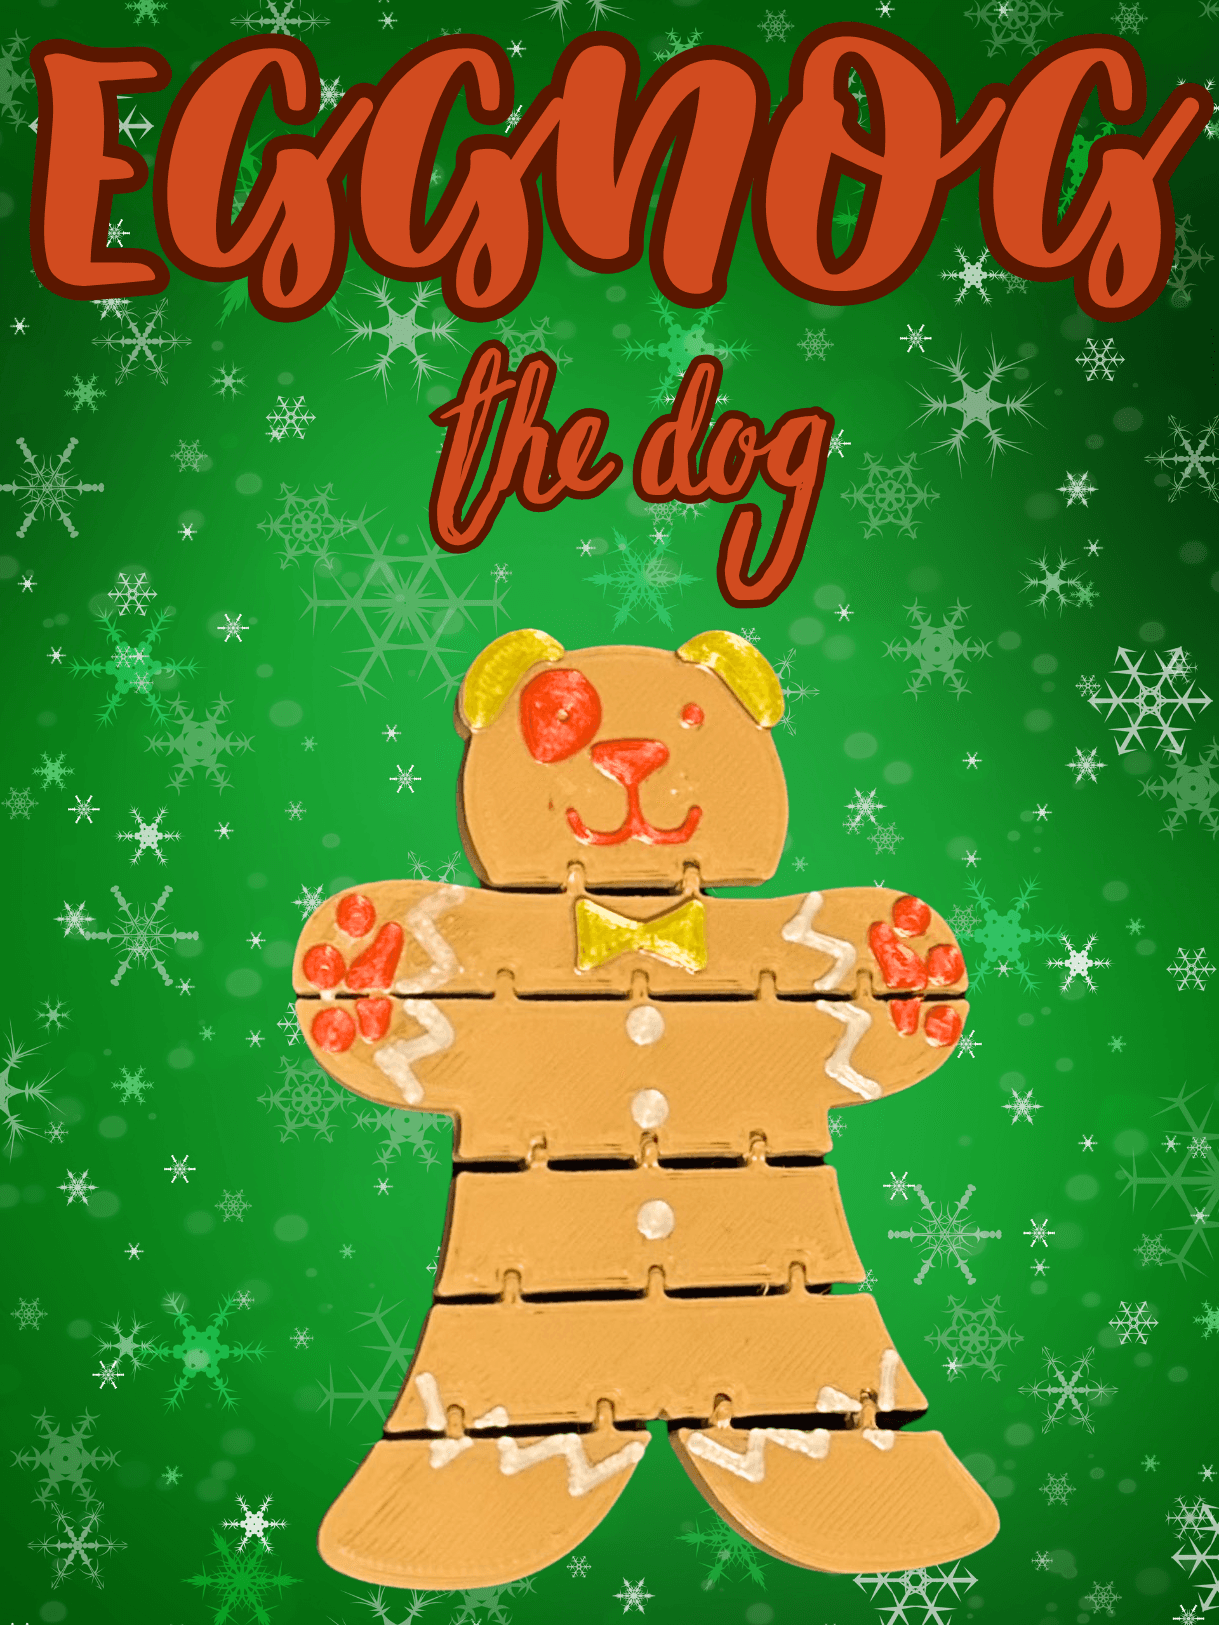 Eggnog the dog 3d model